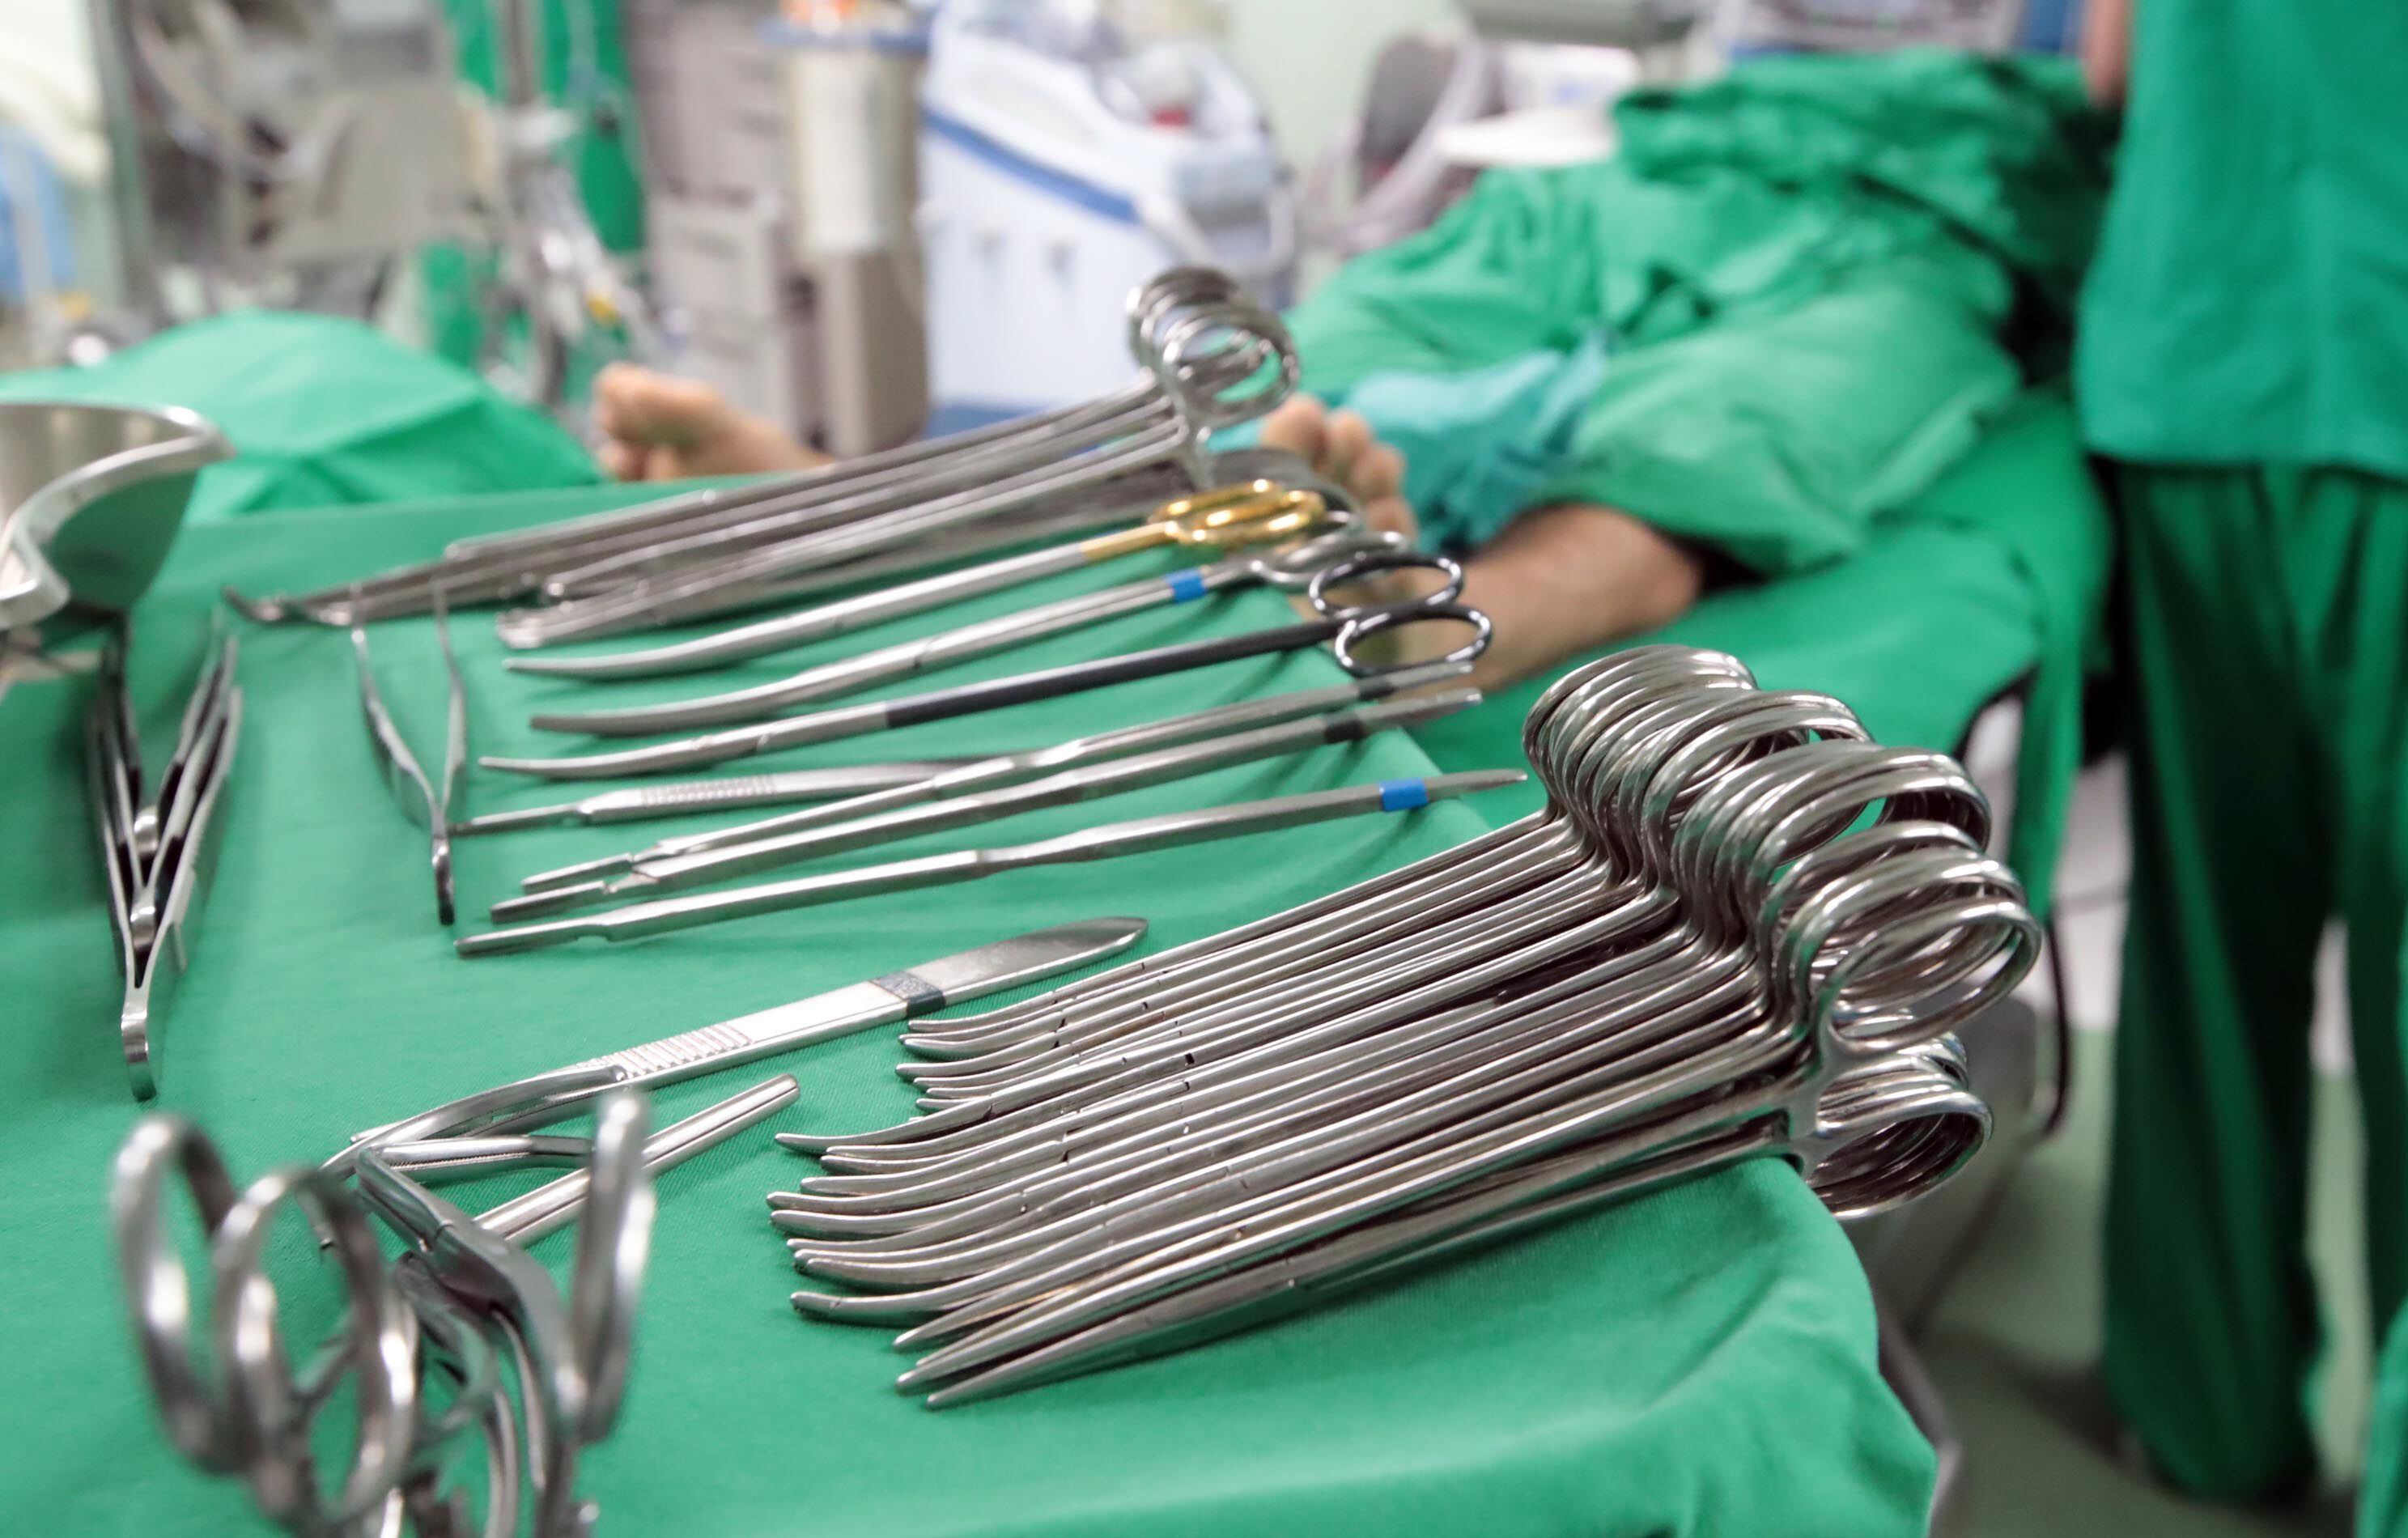 Cualquier procedimiento quirúrgico puede tener complicaciones, pero si es hecho por un especialista, este tendrá la capacidad para resolverlas, advierte la asociación de cirujanos plásticos. 